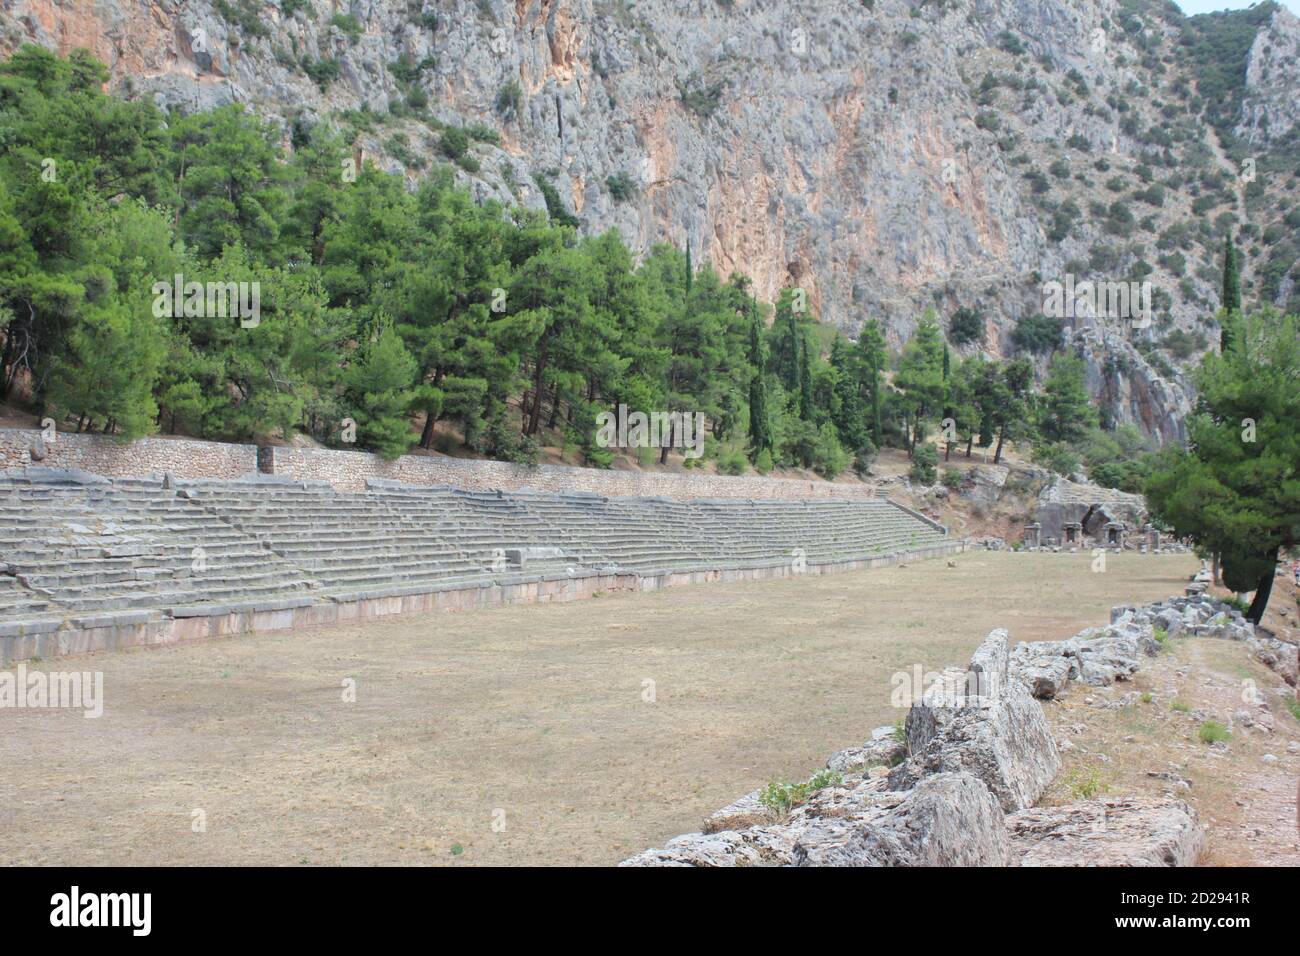 Le stade dans le site archéologique de Delphes en Grèce Banque D'Images